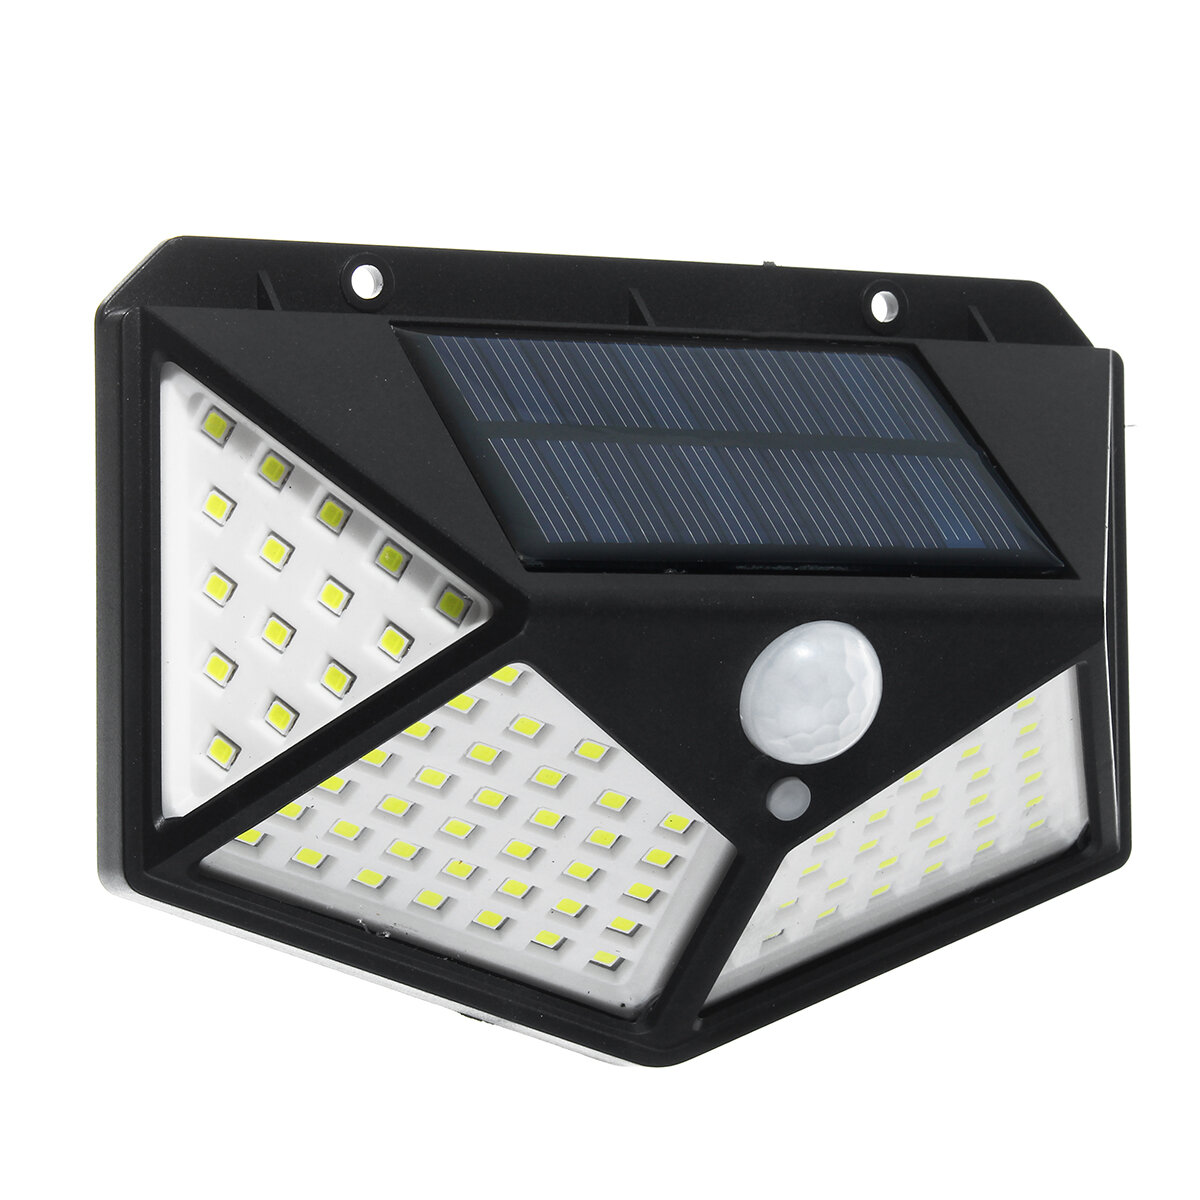 

100 LED Солнечная Питание Водонепроницаемы IP65 PIR Движение Датчик Солнечная Освещение На открытом воздухе Сад Лампа